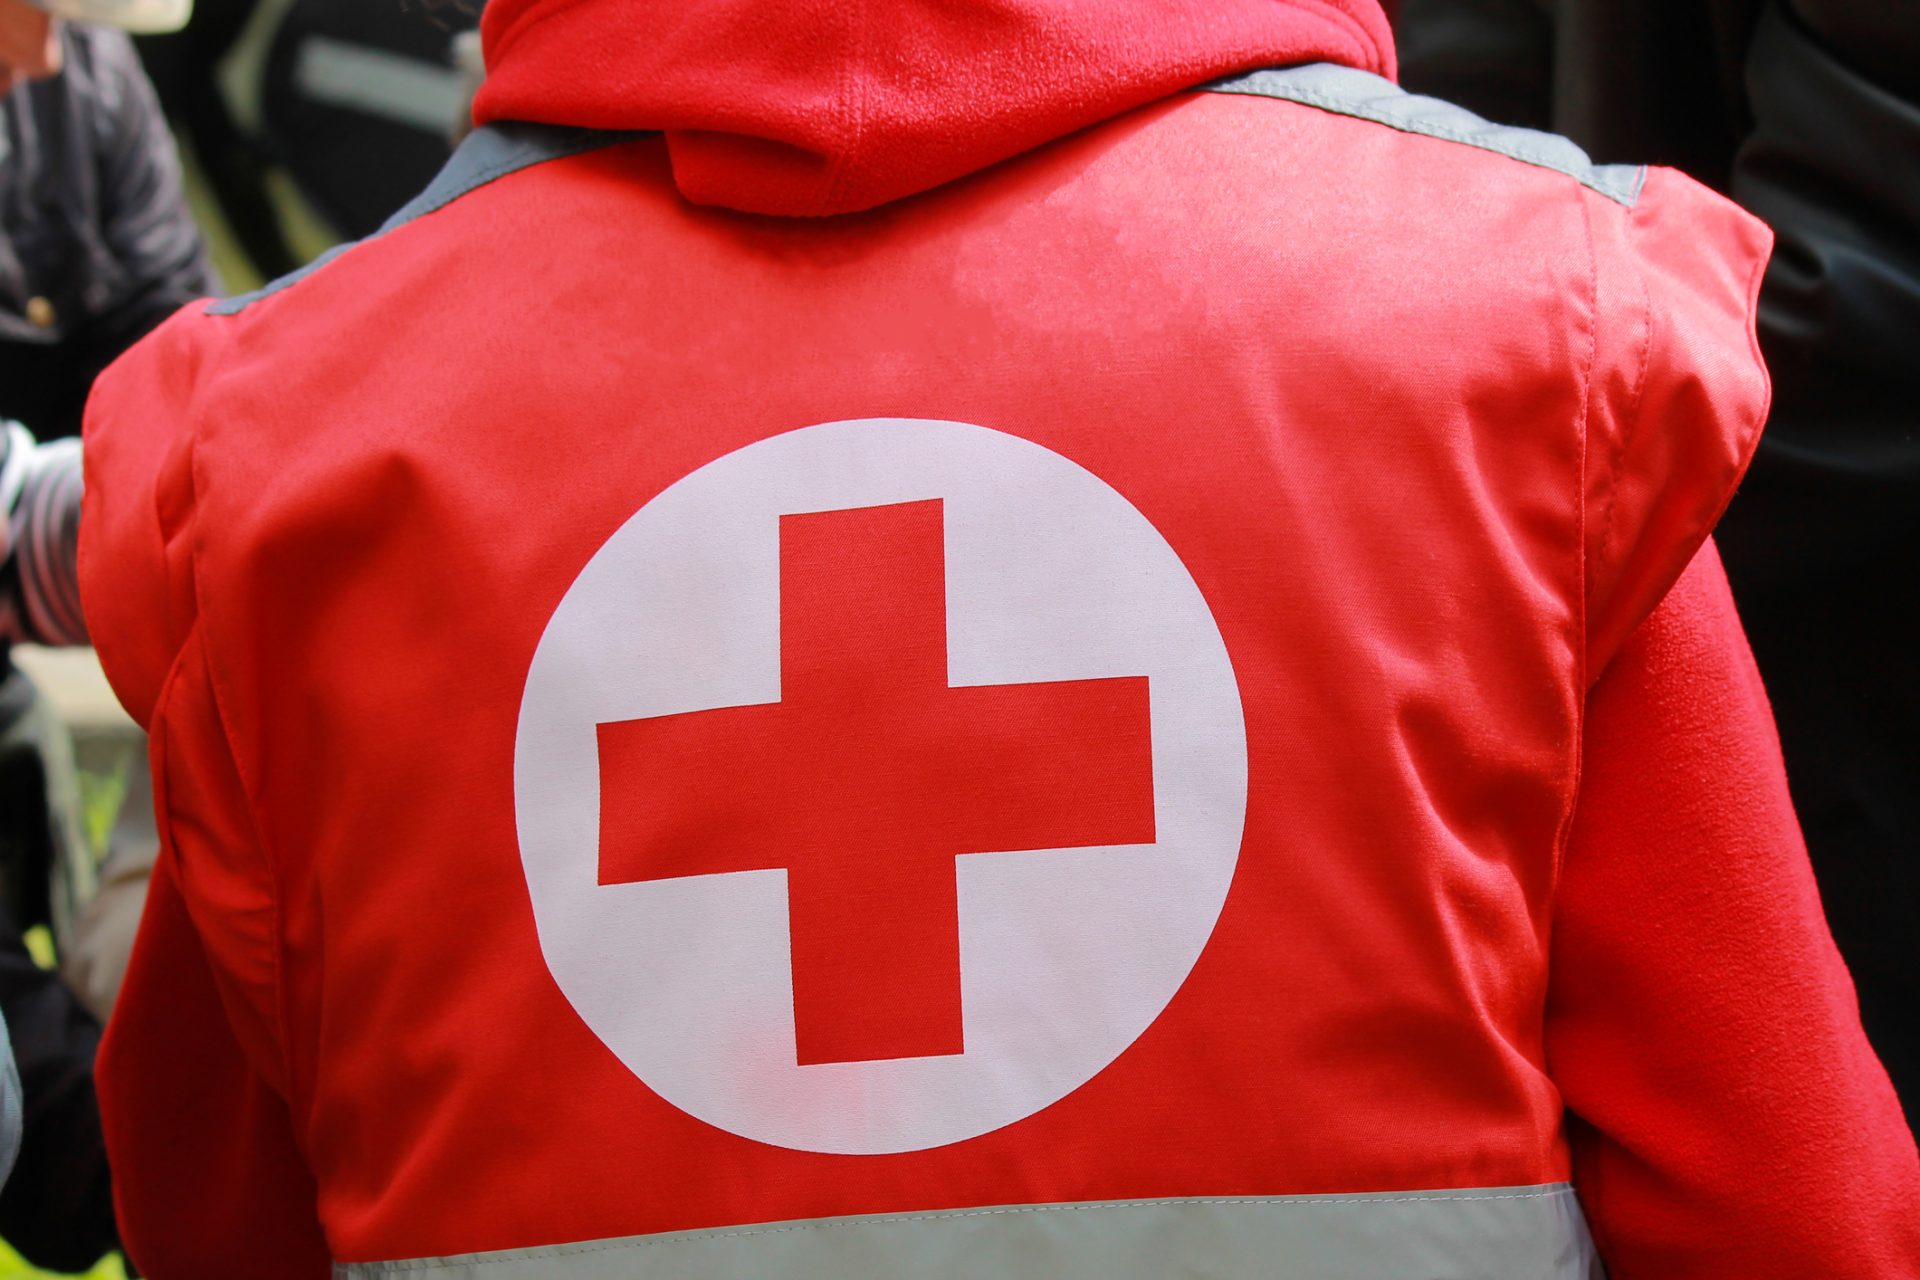 Acusado de não distribuir doações, vice-diretor da Cruz Vermelha em Hubei é demitido